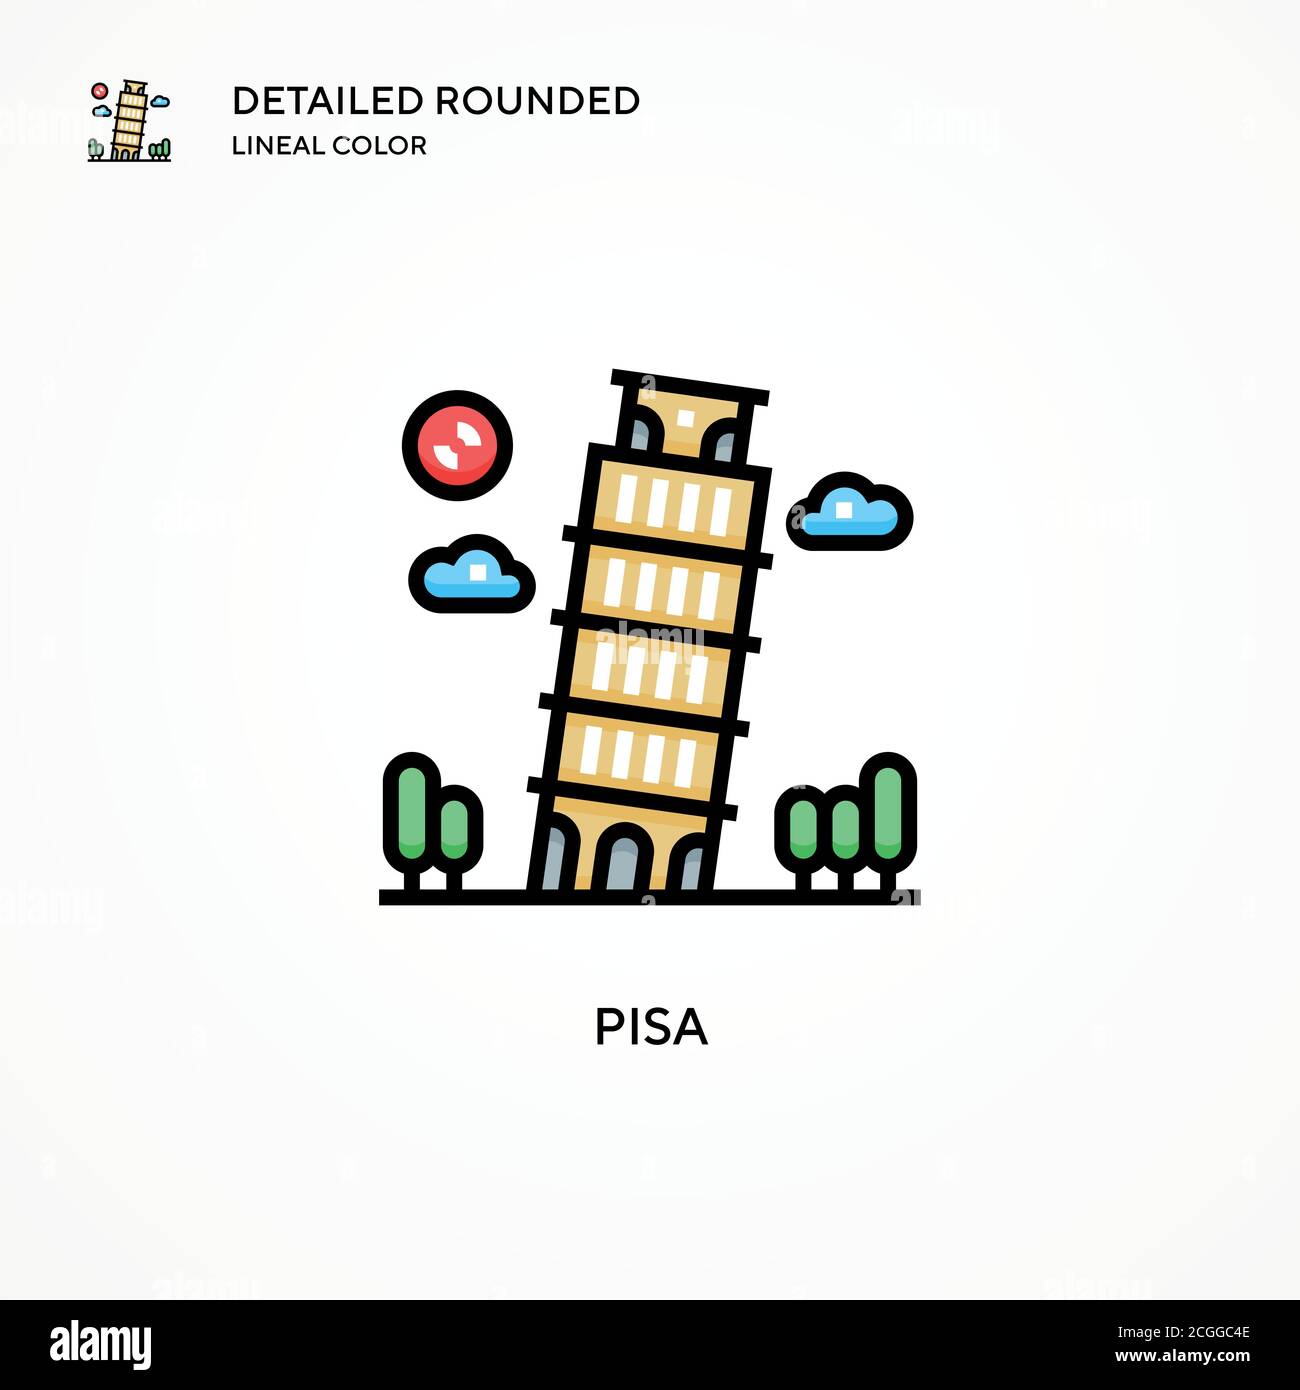 Pisa-Vektorsymbol. Moderne Vektorgrafik Konzepte. Einfach zu bearbeiten und anzupassen. Stock Vektor